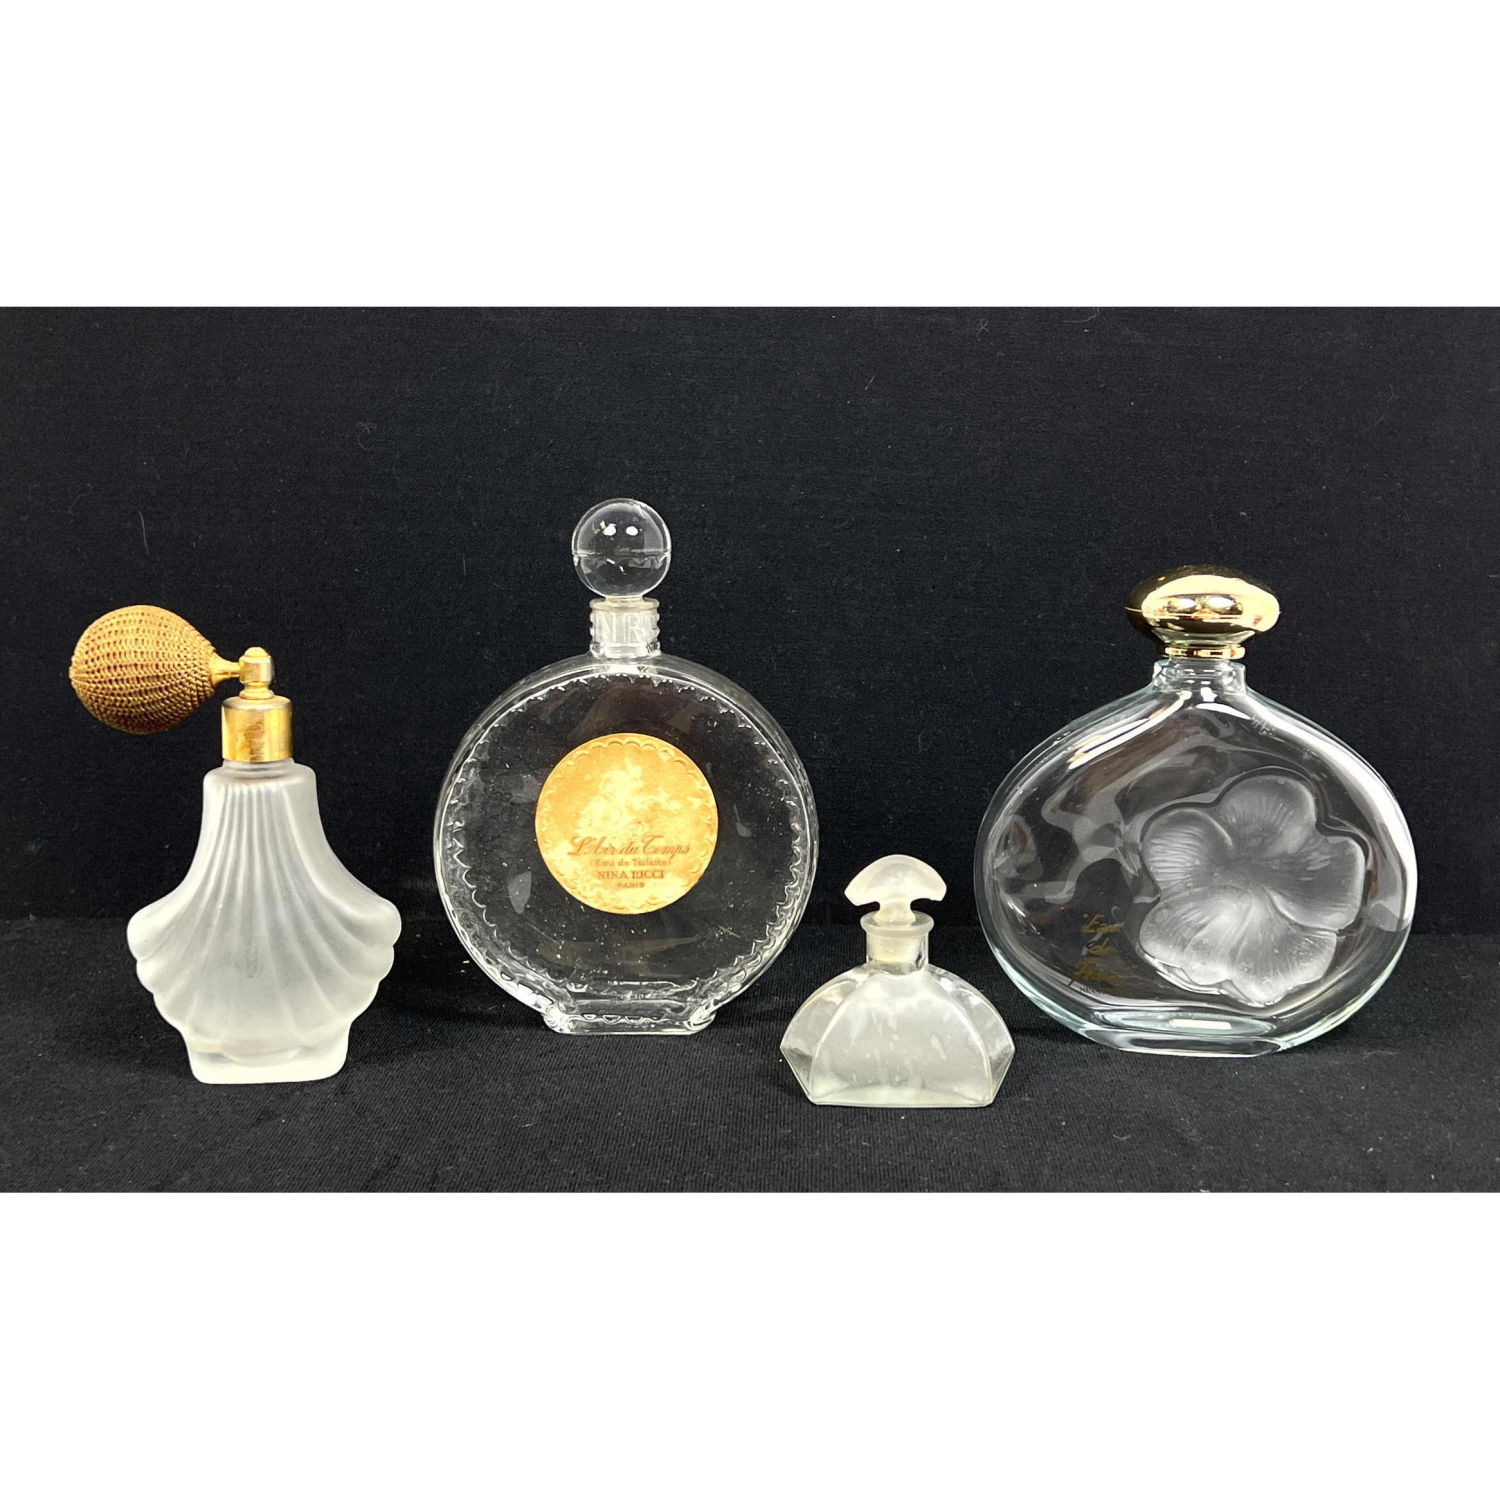 4 pc. 3 Nina Ricci Lalique perfume